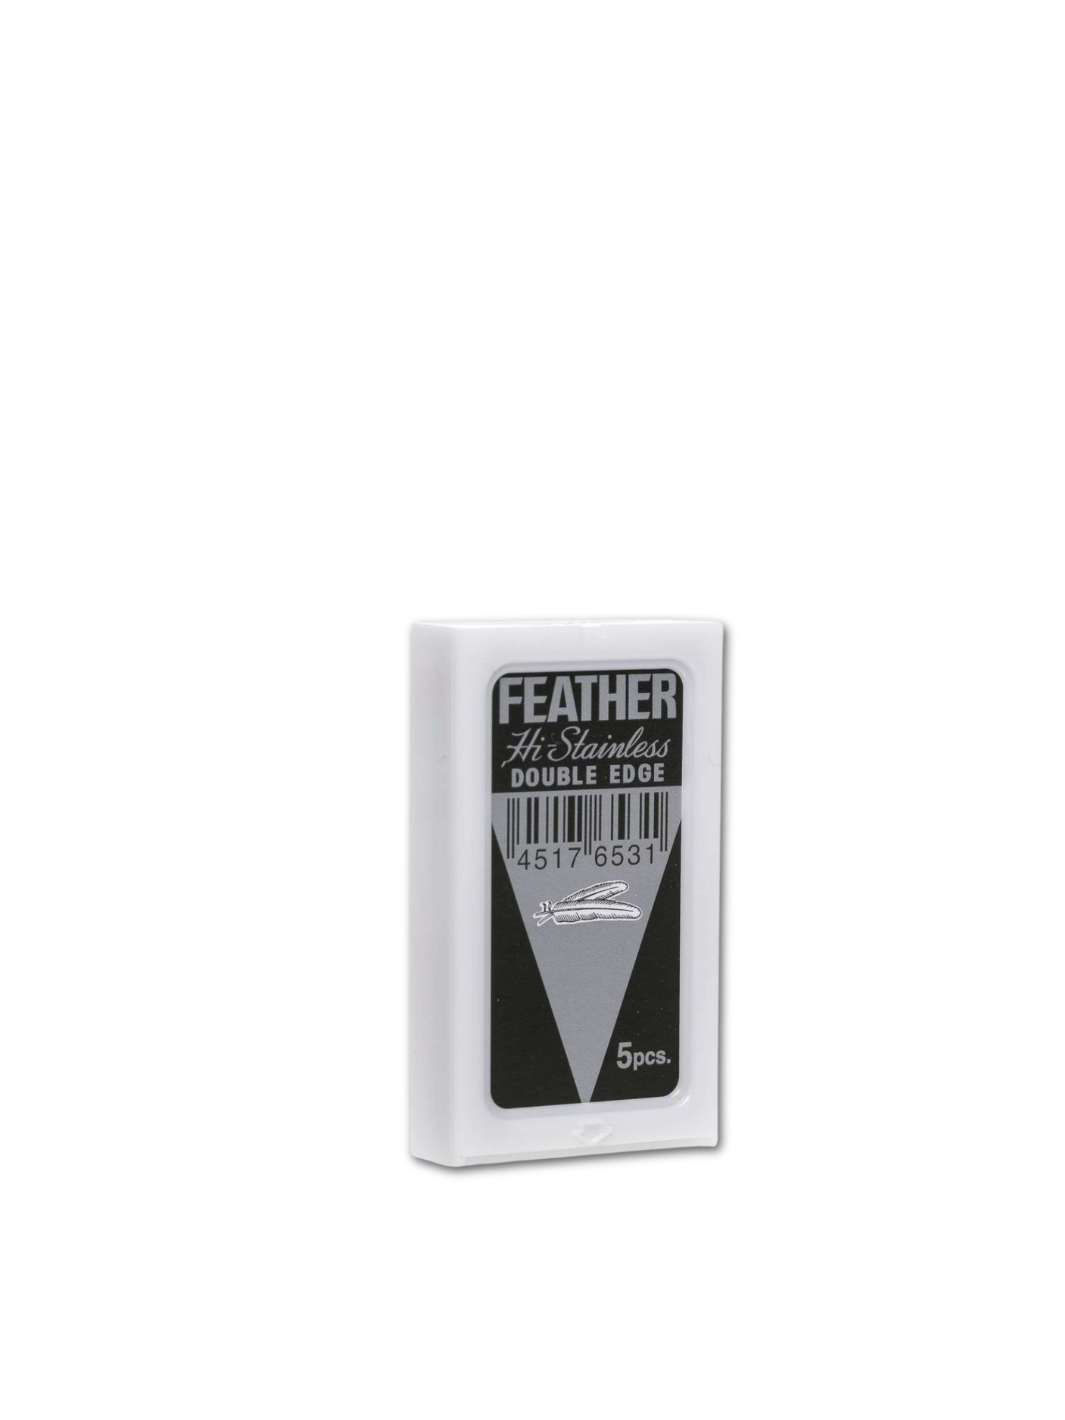 5er Set Feather Hi-Stainless Double Edge Rasierklingen, Premium-Barbierqualität für eine glatte Rasur, erhältlich bei Phullcutz.